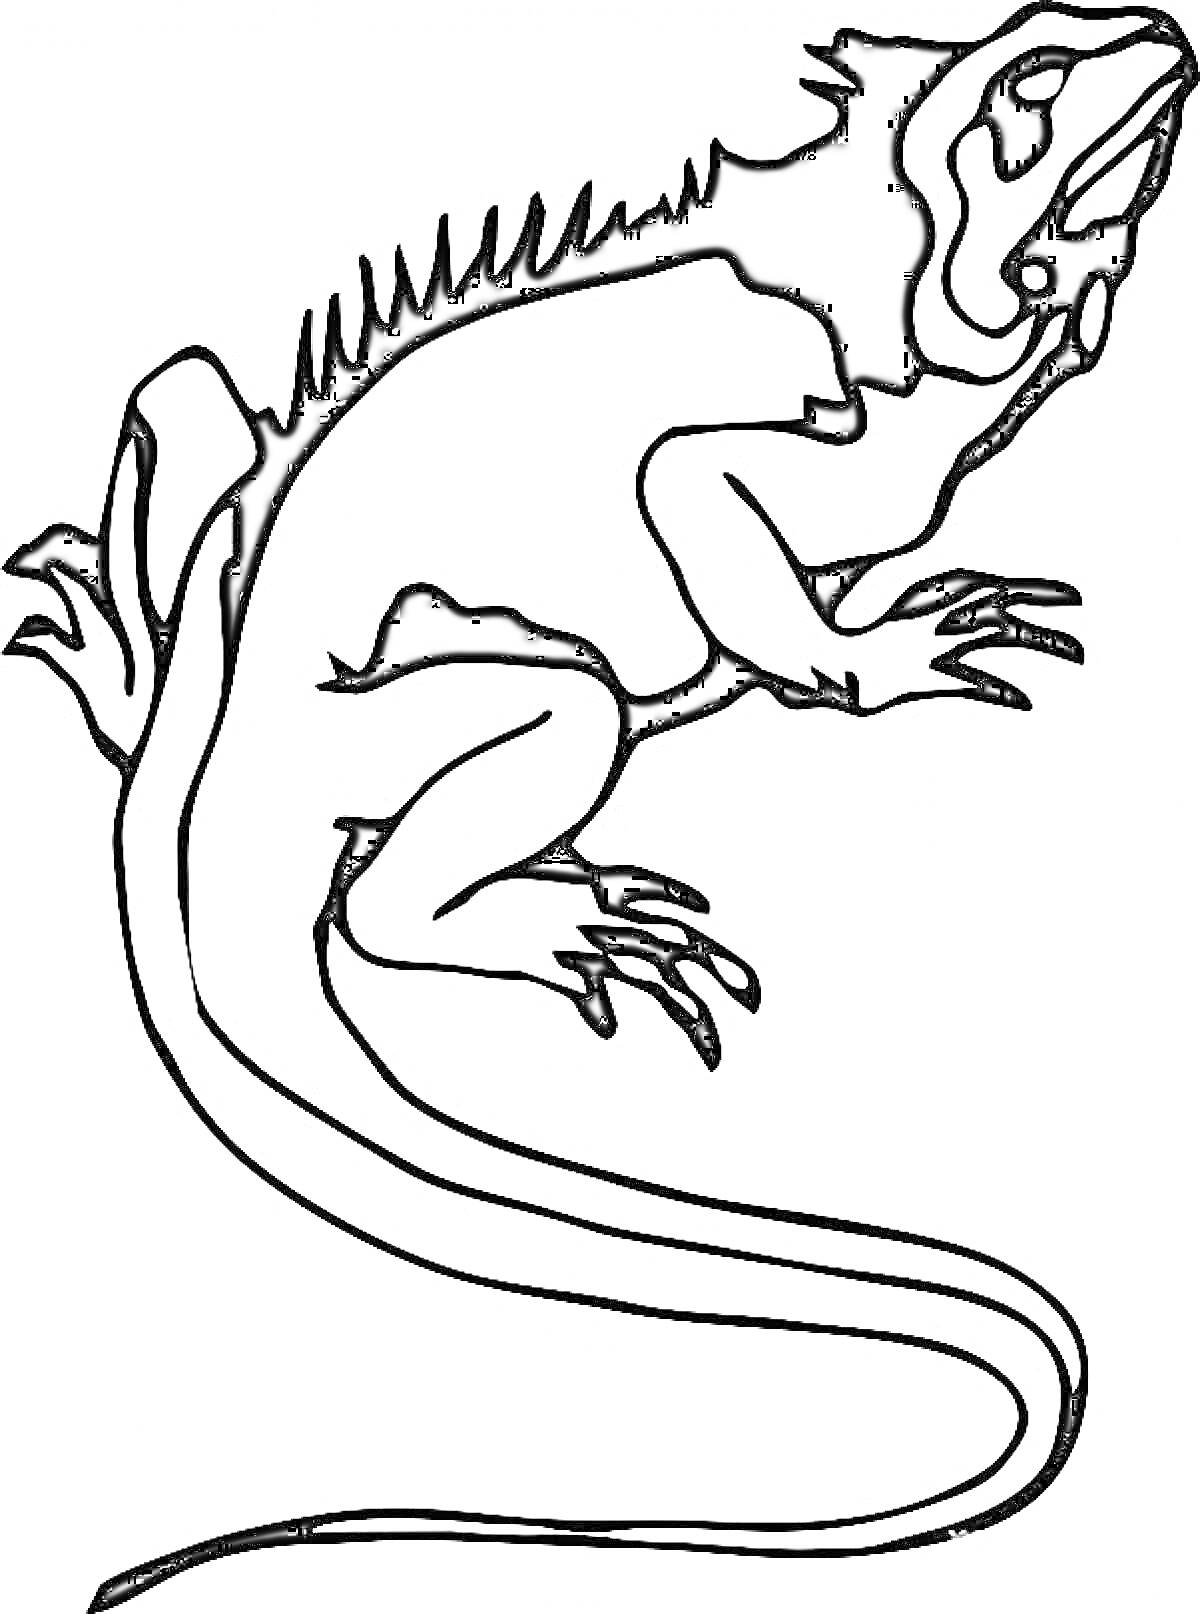 Ящерица с длинным хвостом и шипами на спине, рисунок черно-белый контур